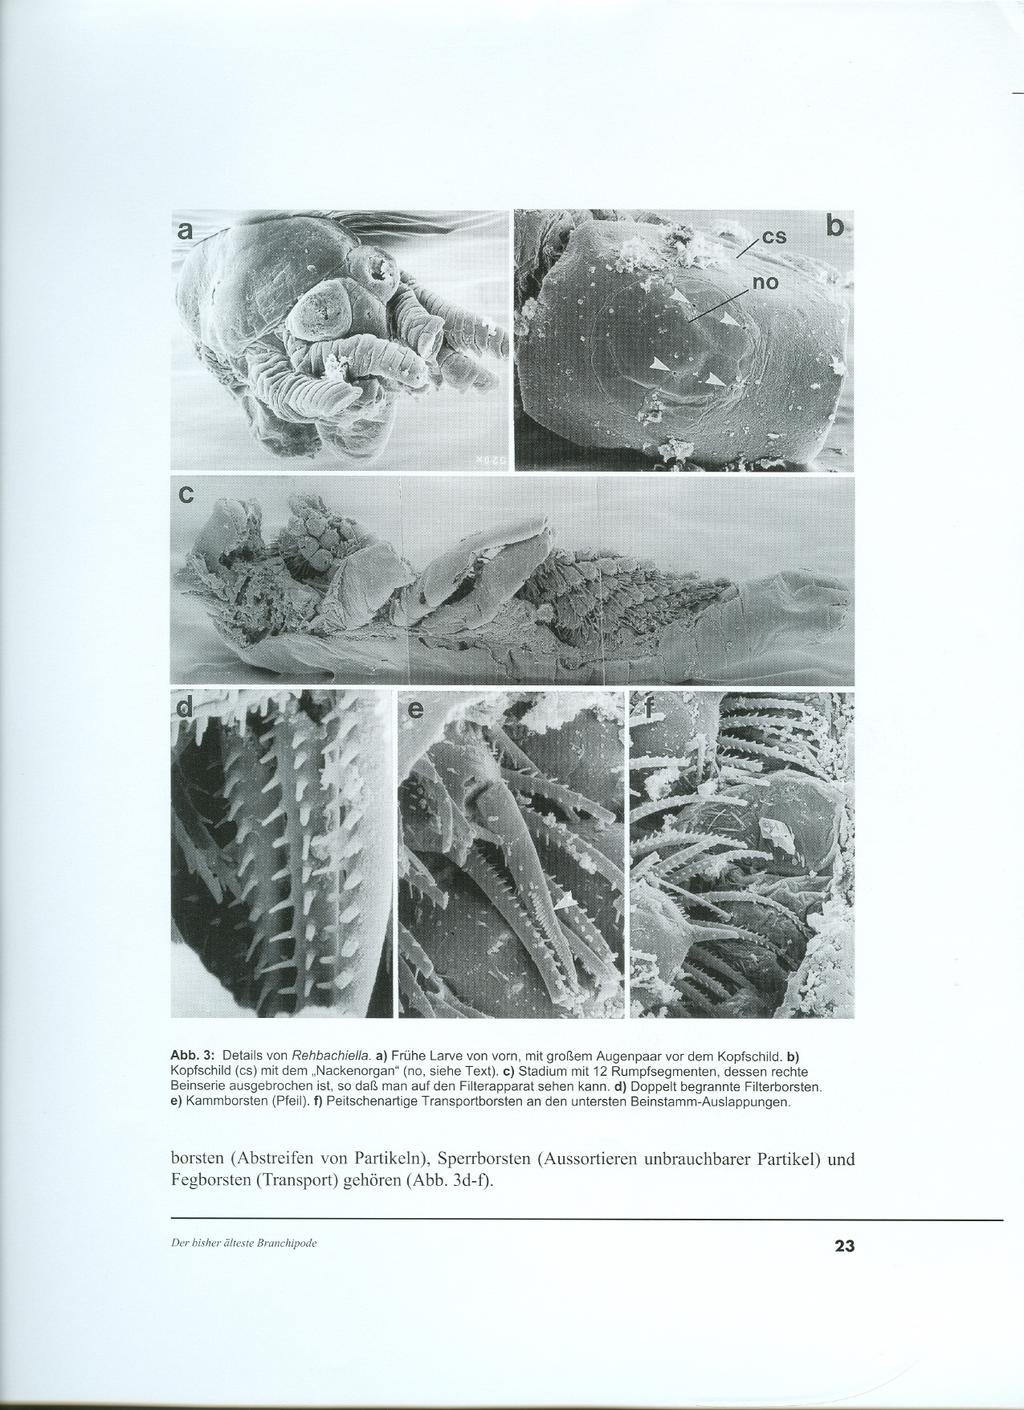 Abb. 3: Details von Rehbachiella. a) Frühe Larve von vorn, mit großem Augenpaar vor dem Kopfschild. b) Kopfschild (cs) mit dem "Nackenorgan" (no, siehe Text).